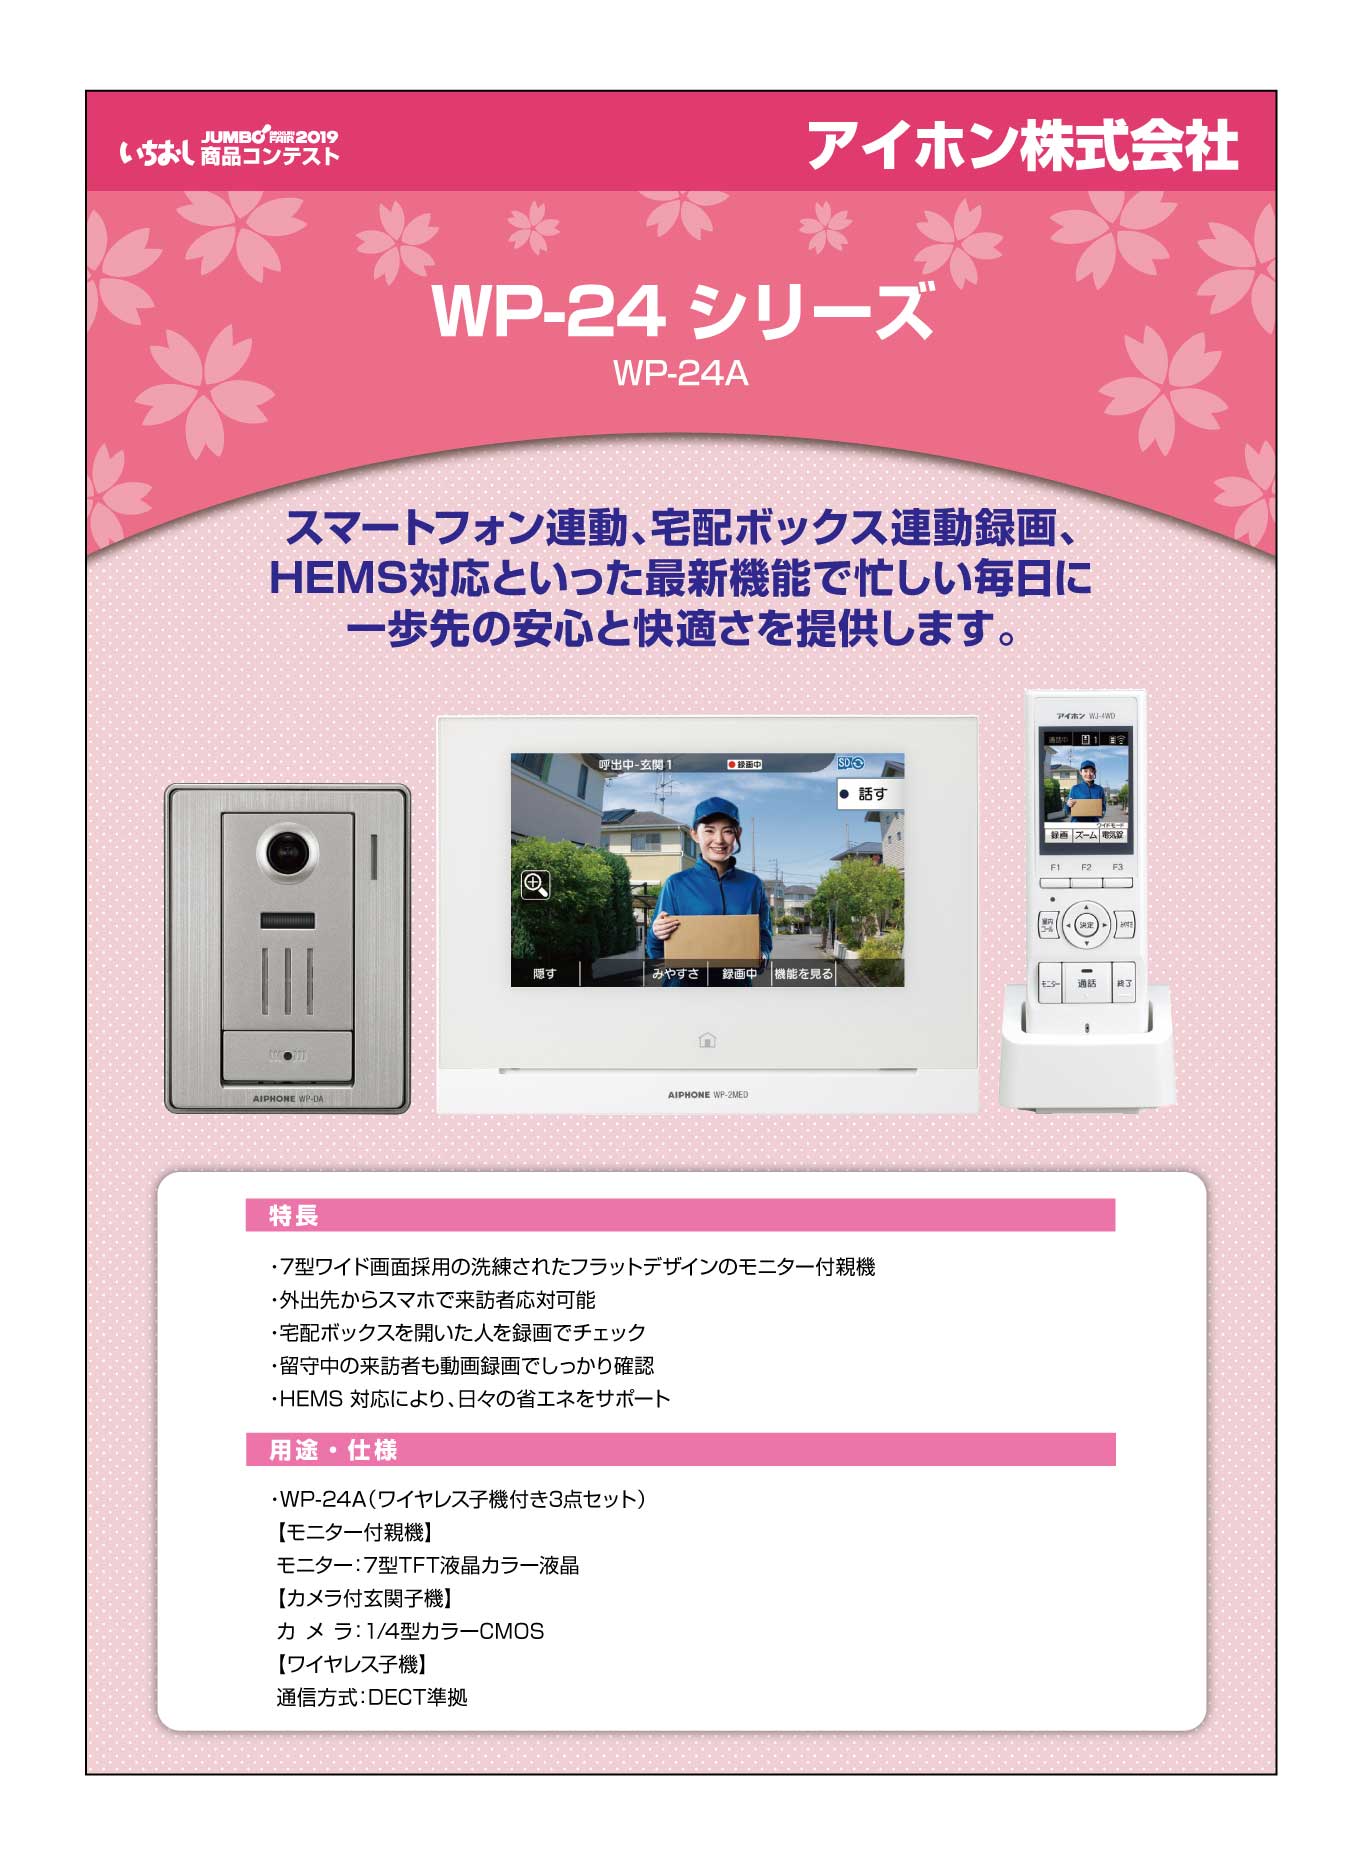 「スマートフォン連動テレビドアホン WP-24 シリーズ」アイホン株式会社の画像